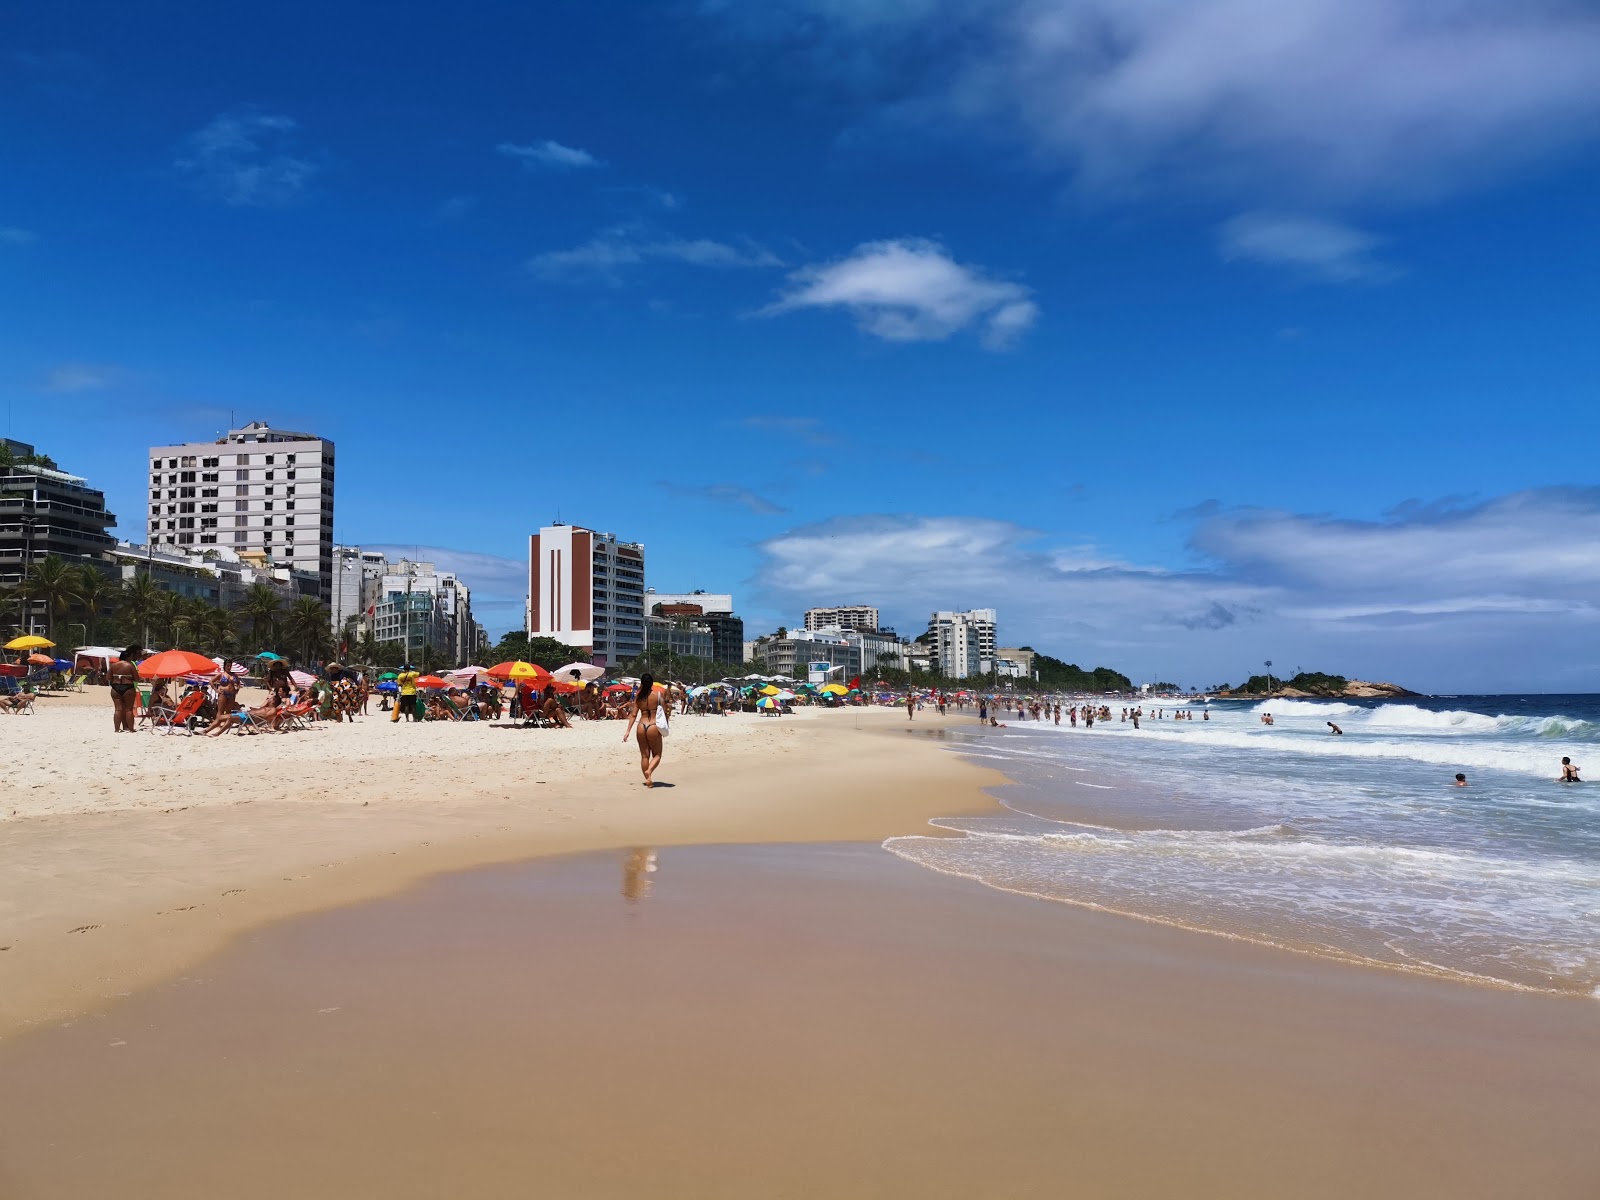 Foto av Ipanema Stranden med ljus fin sand yta